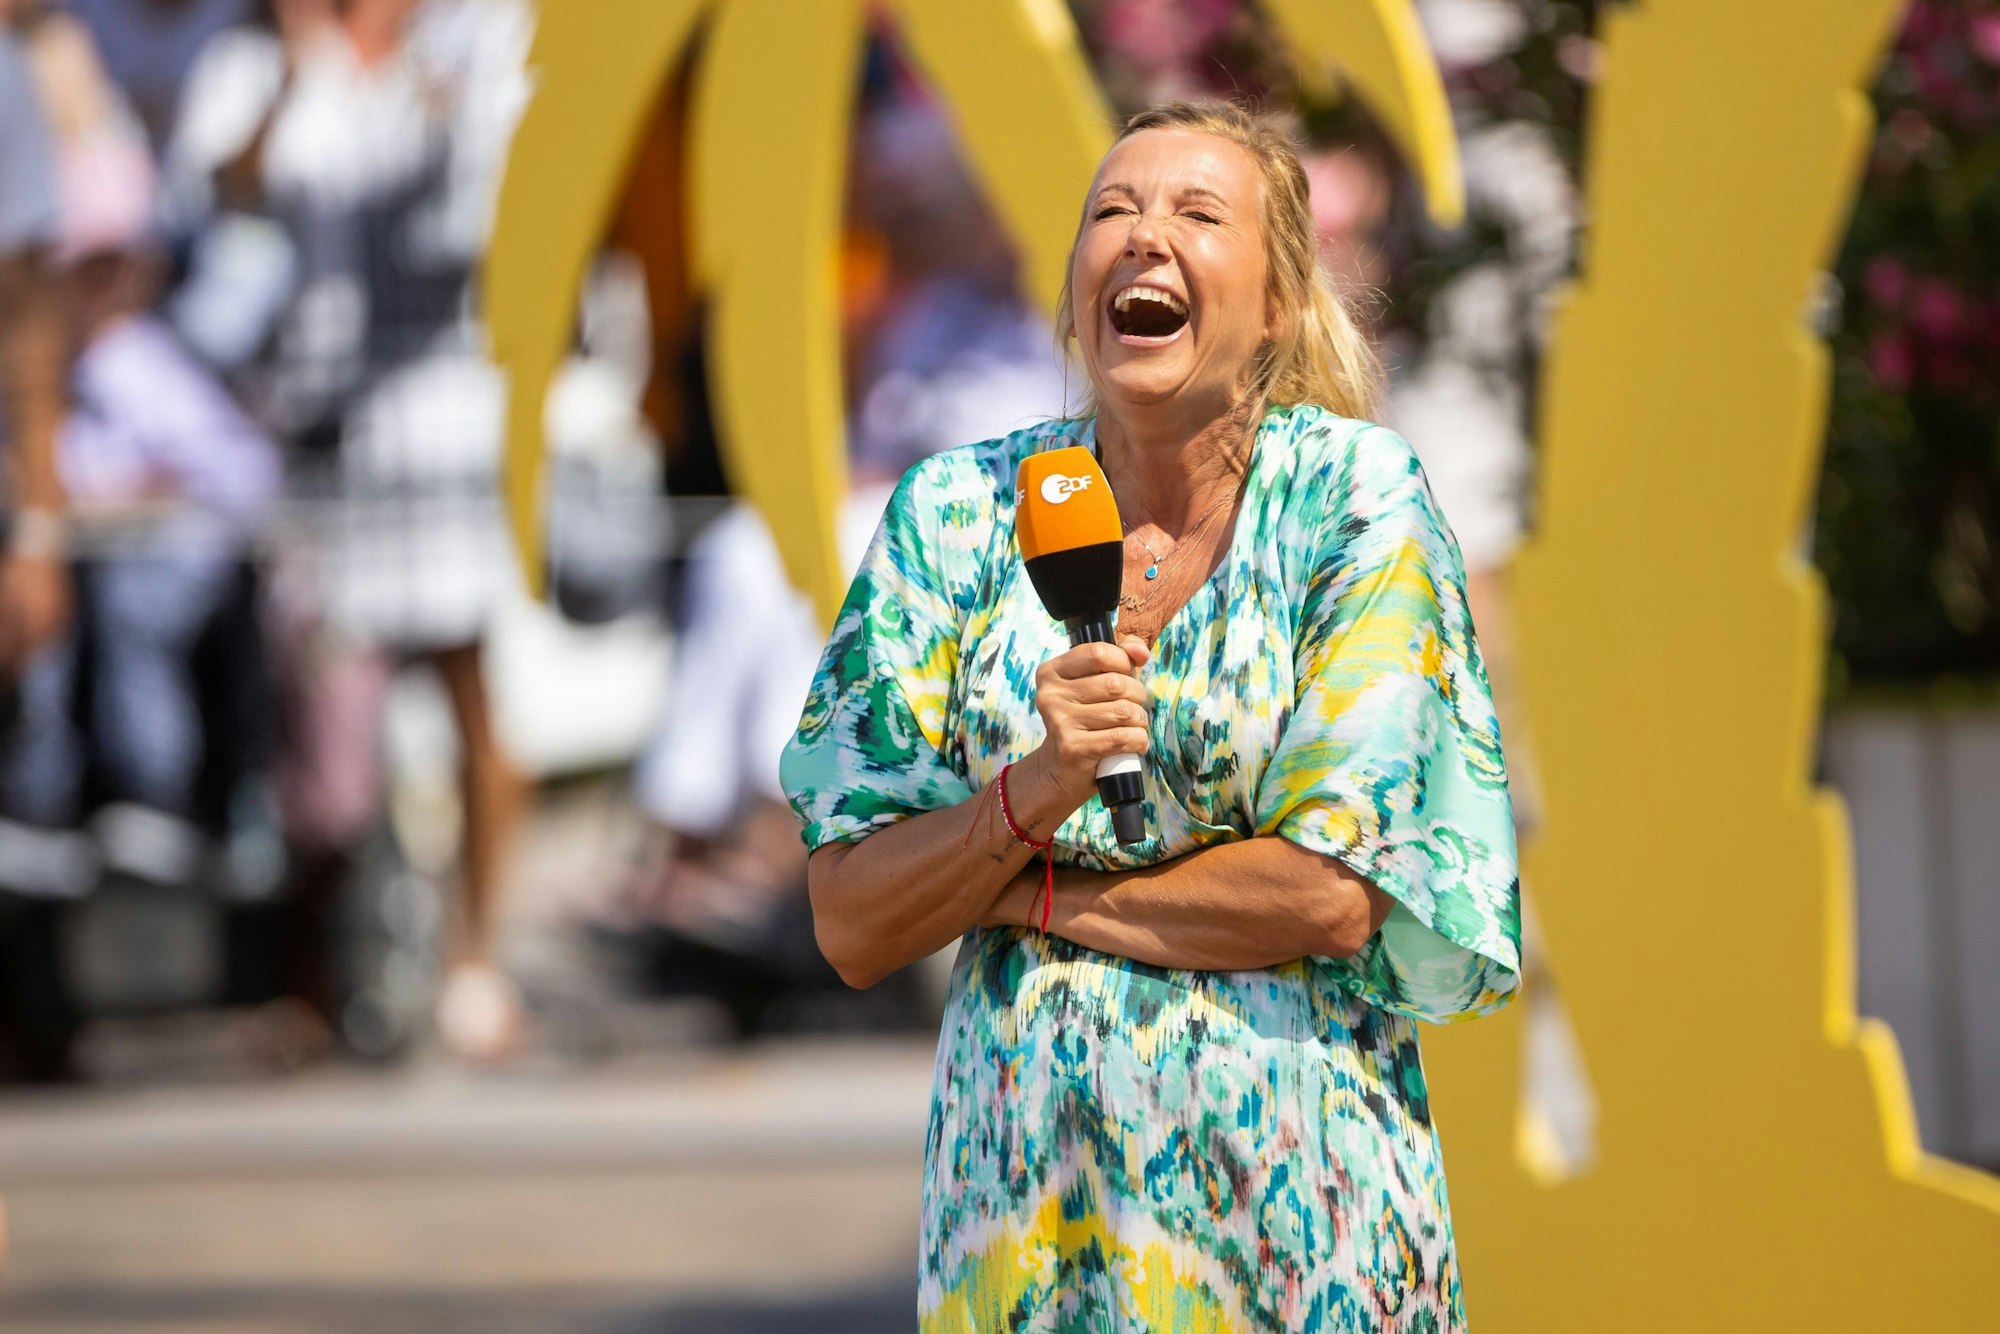 Andrea Kiewel lacht bei der Moderation des ZDF-„Fernsehgarten“.